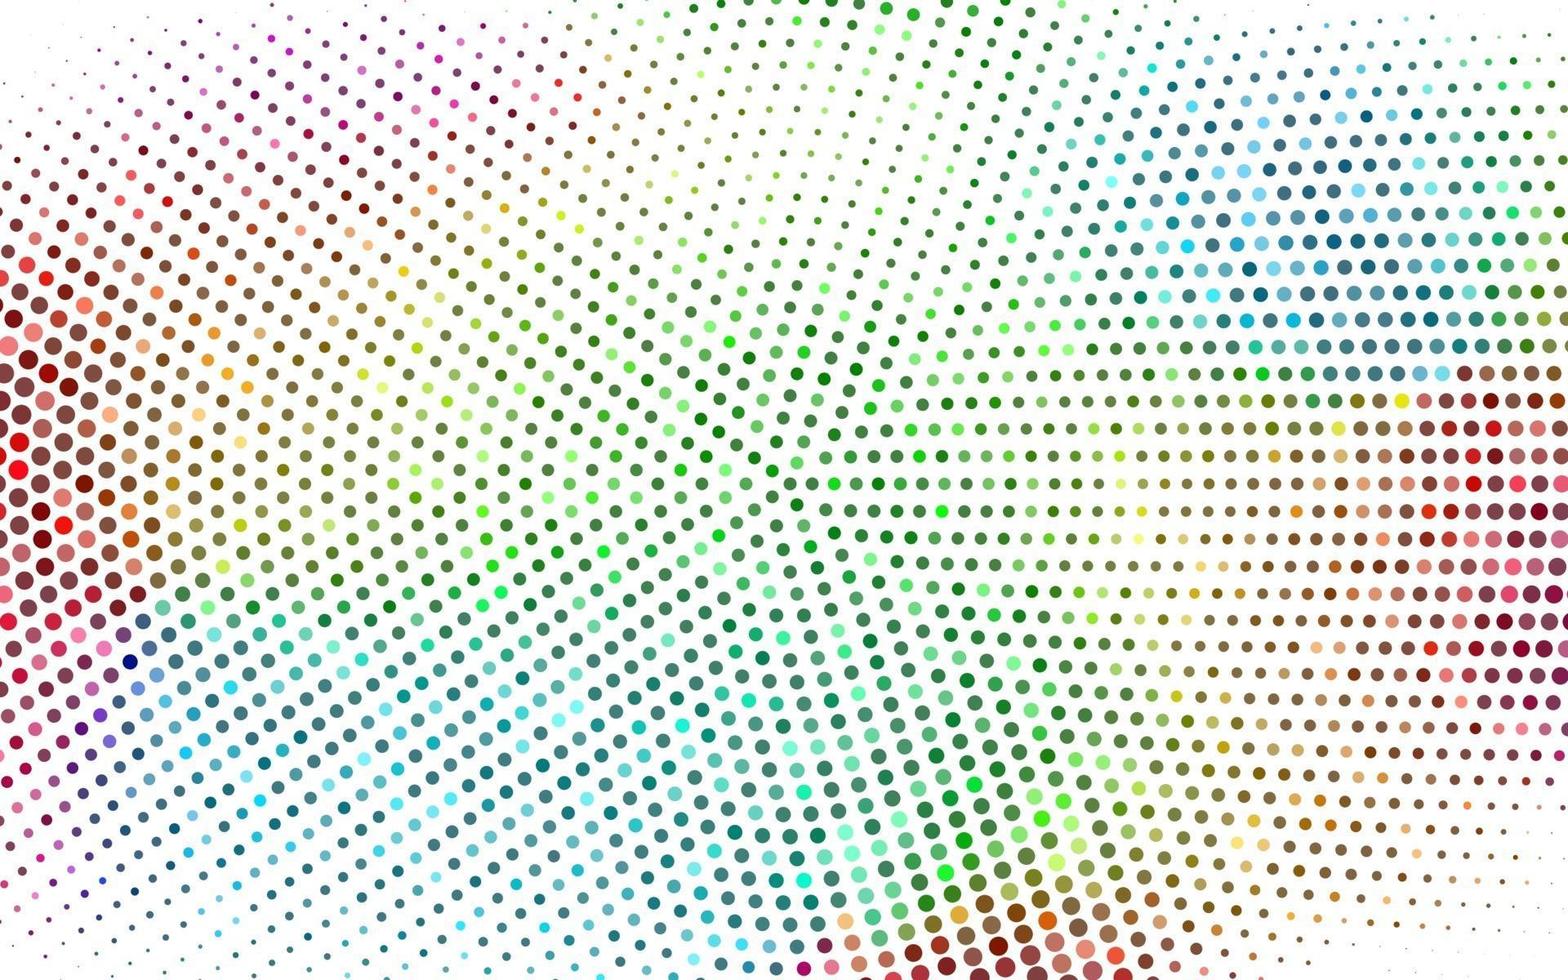 stile mezzitoni cerchio multicolore. trama astratta, glitter isolato su sfondo bianco. illustrazione vettoriale